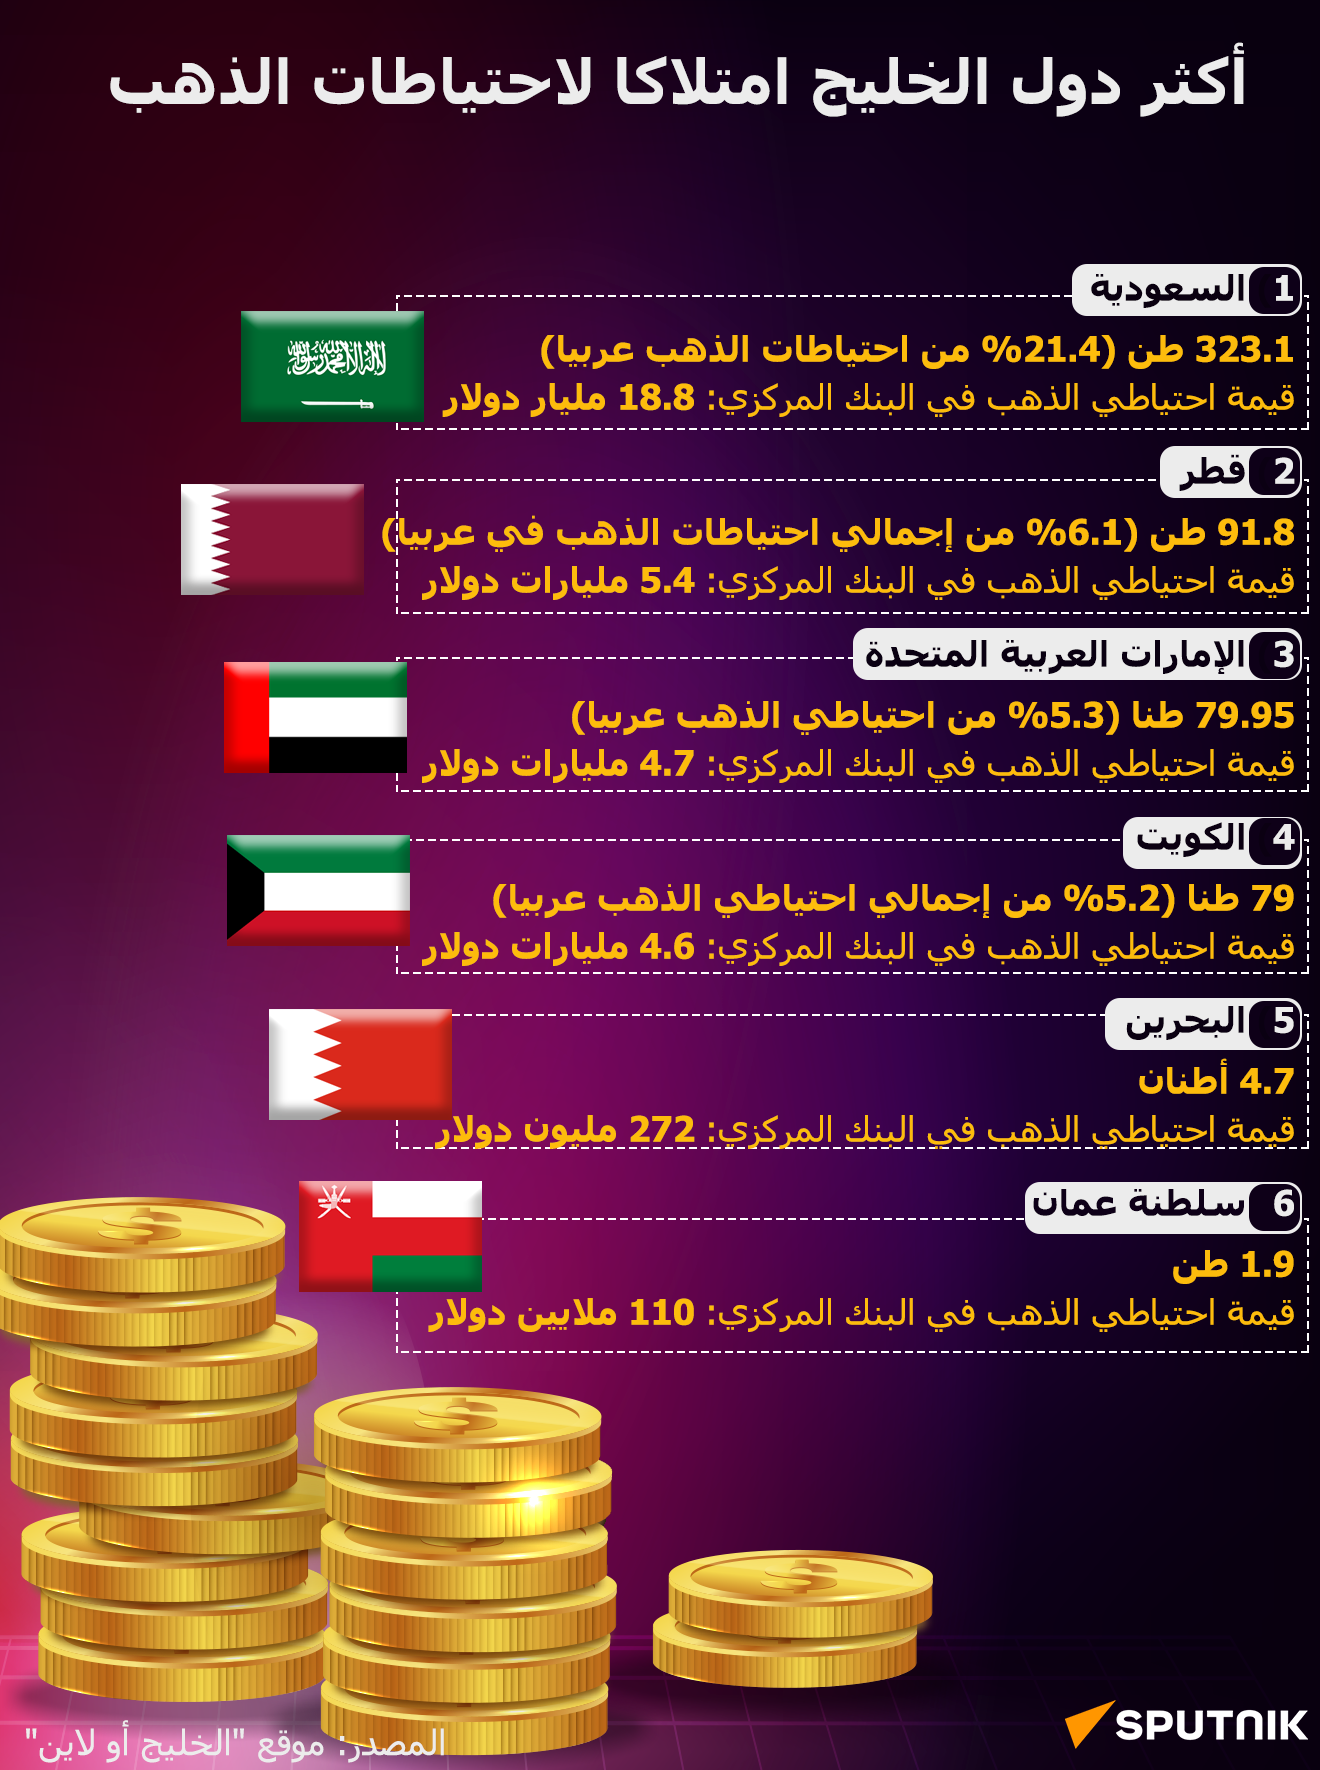 أكثر دول الخليج امتلاكا لاحتياطات الذهب (انفوجراف) - سبوتنيك عربي